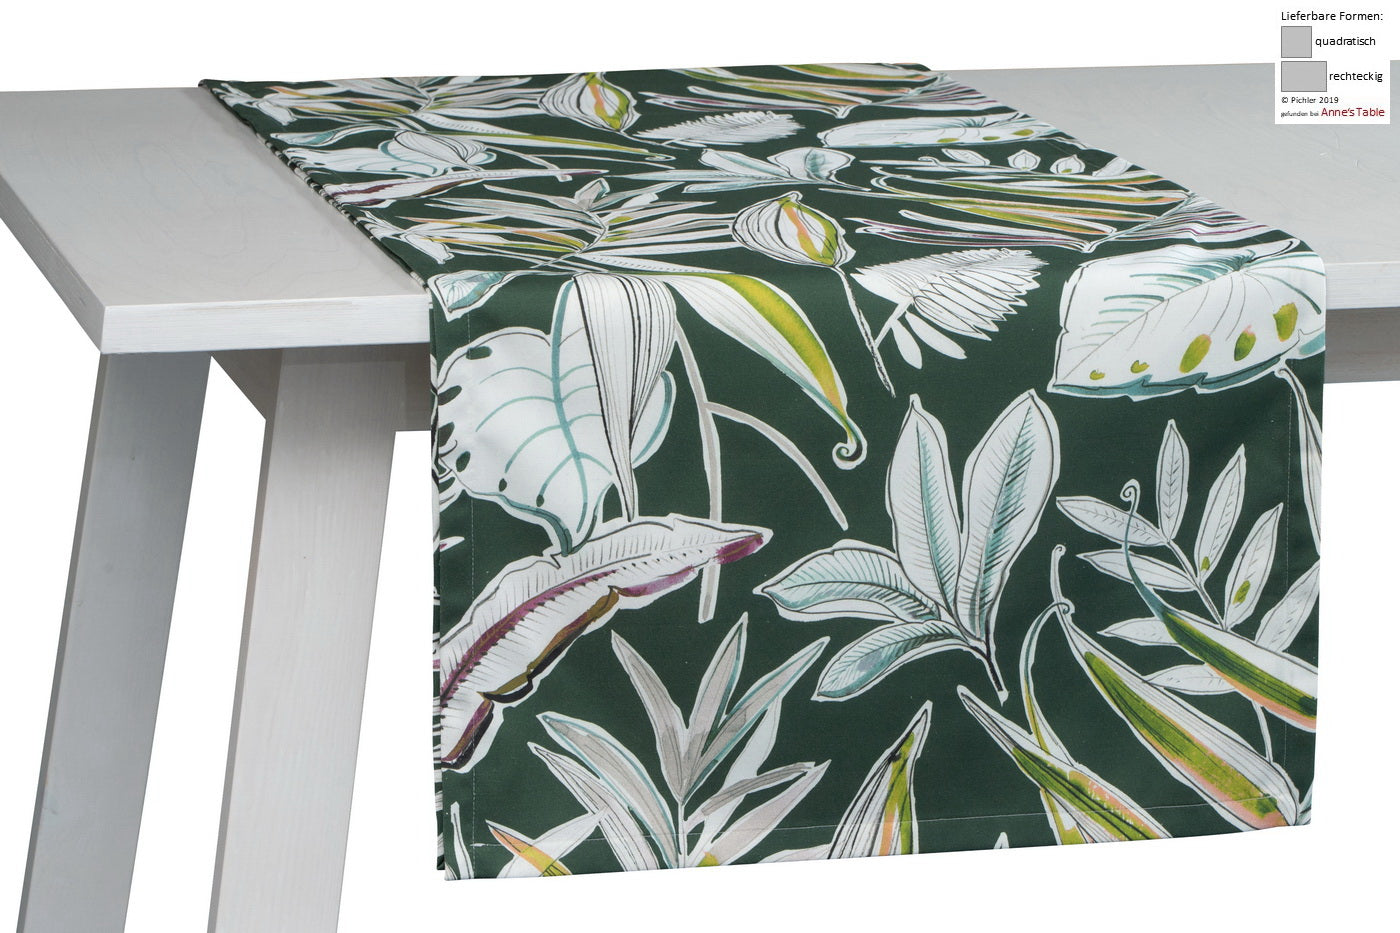 Palmera, Urwald-Design mit Palmwedeln und Blättern, Tischläufer 50x150cm, forest